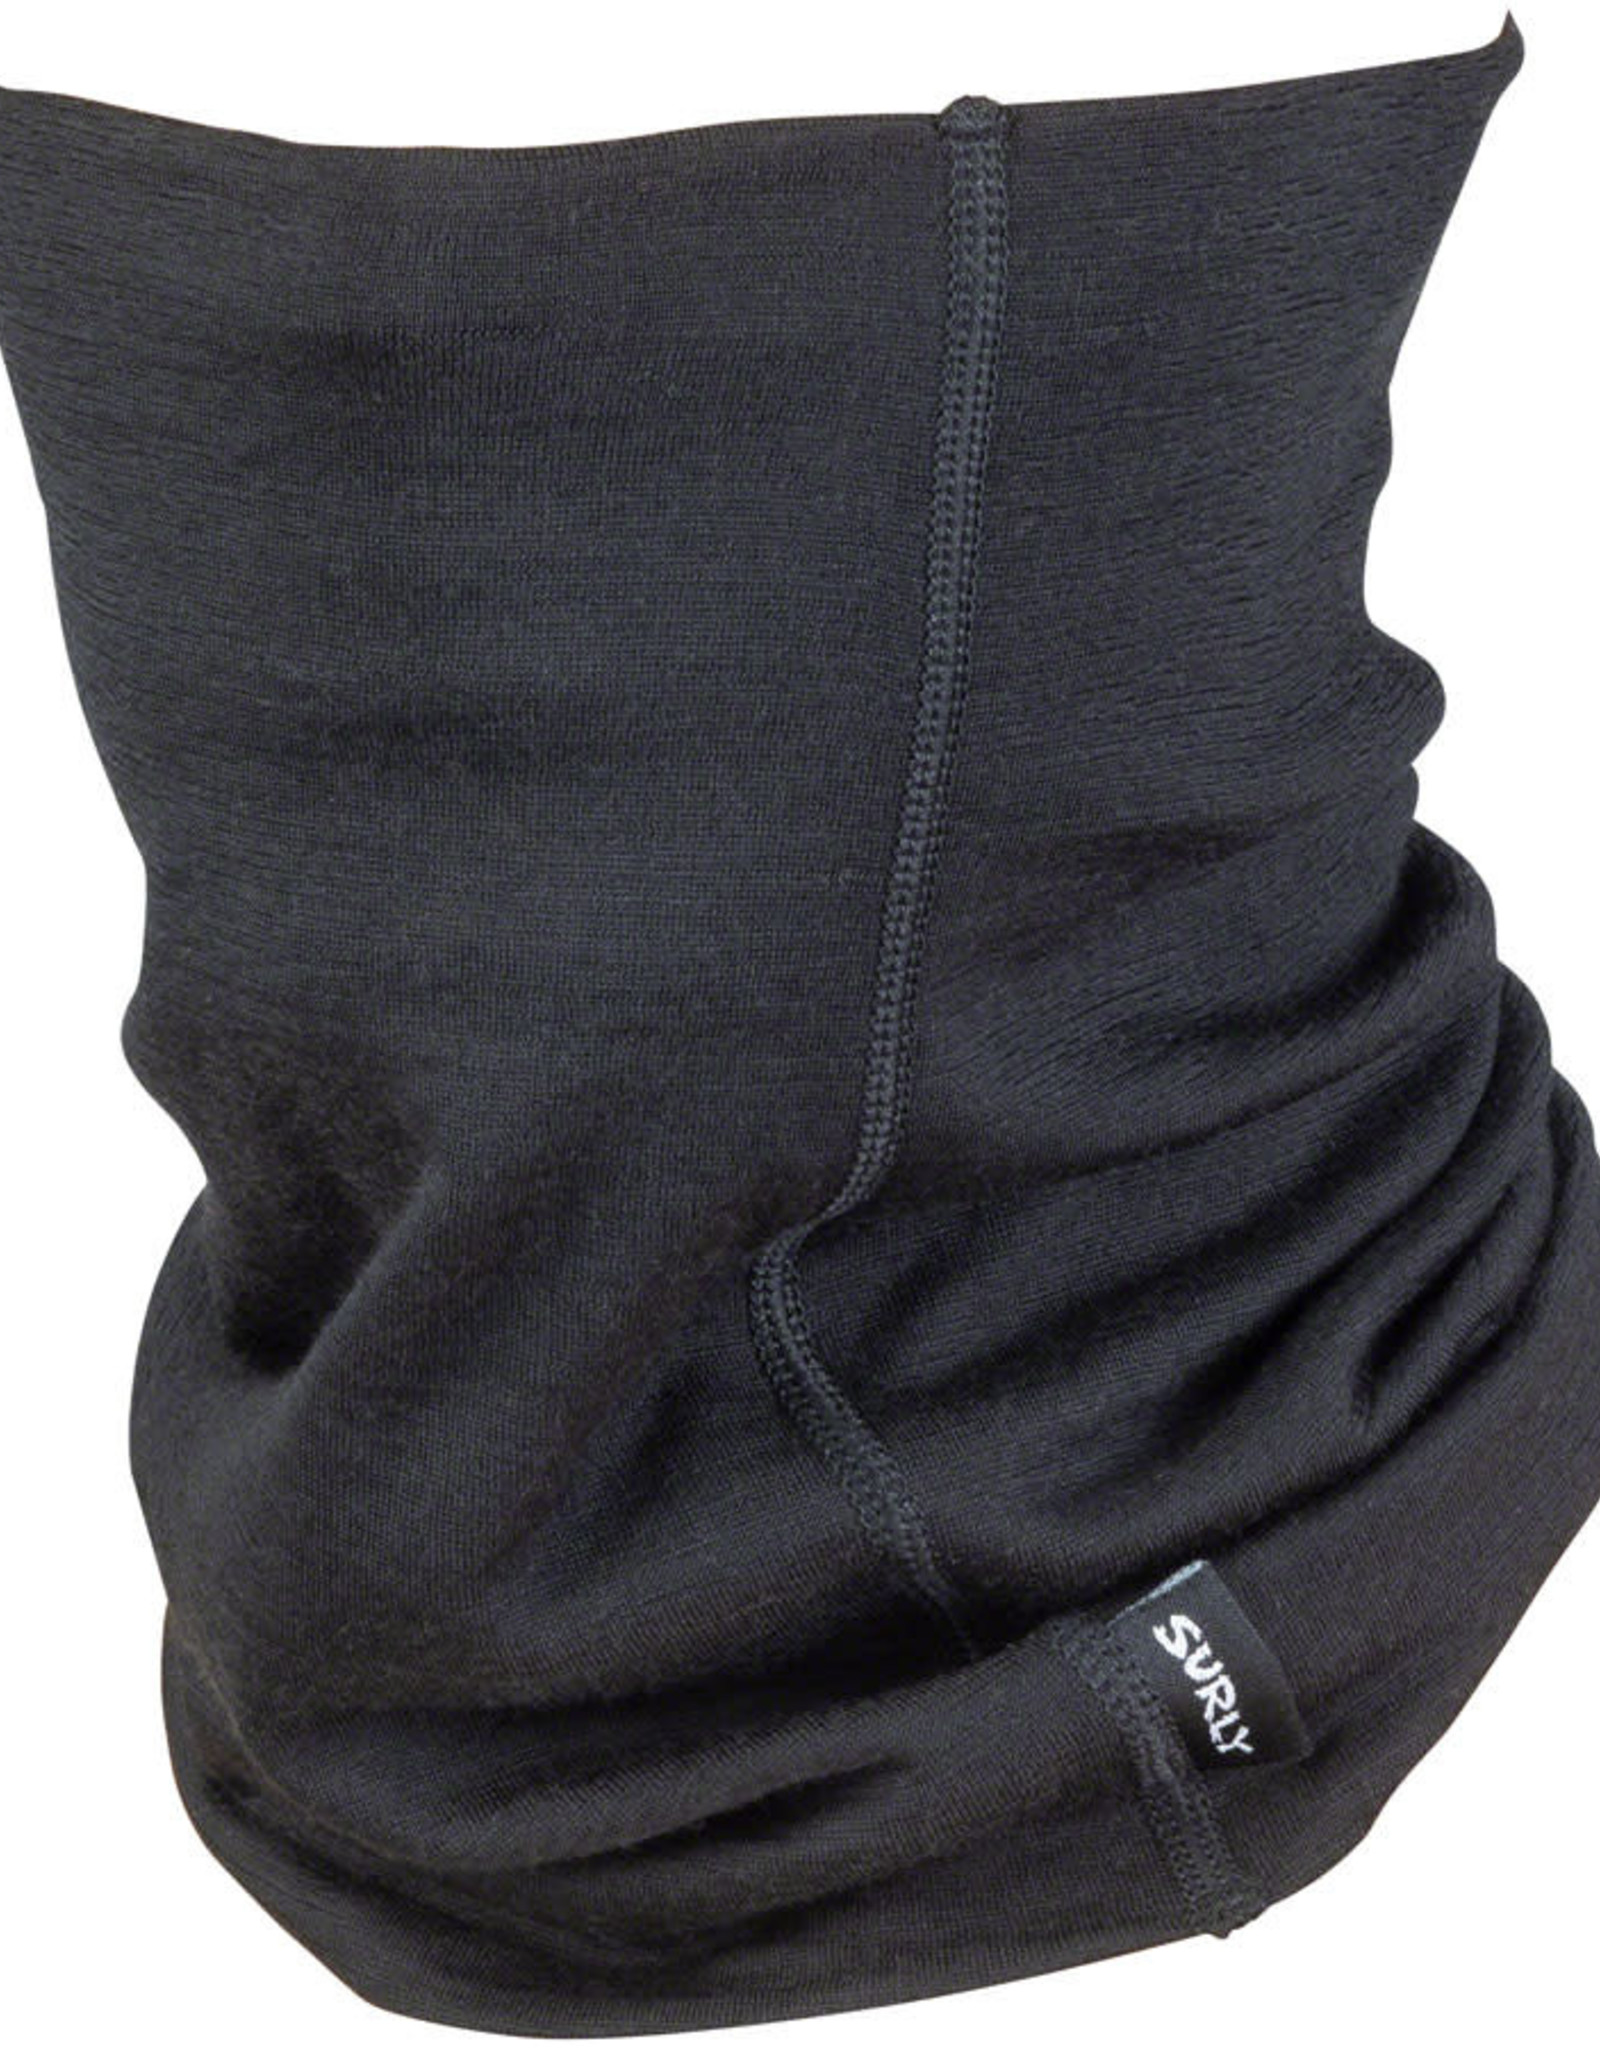 Surly Lightweight Gaiter: Neck Toob - Wool, Black, 150gm, One Size